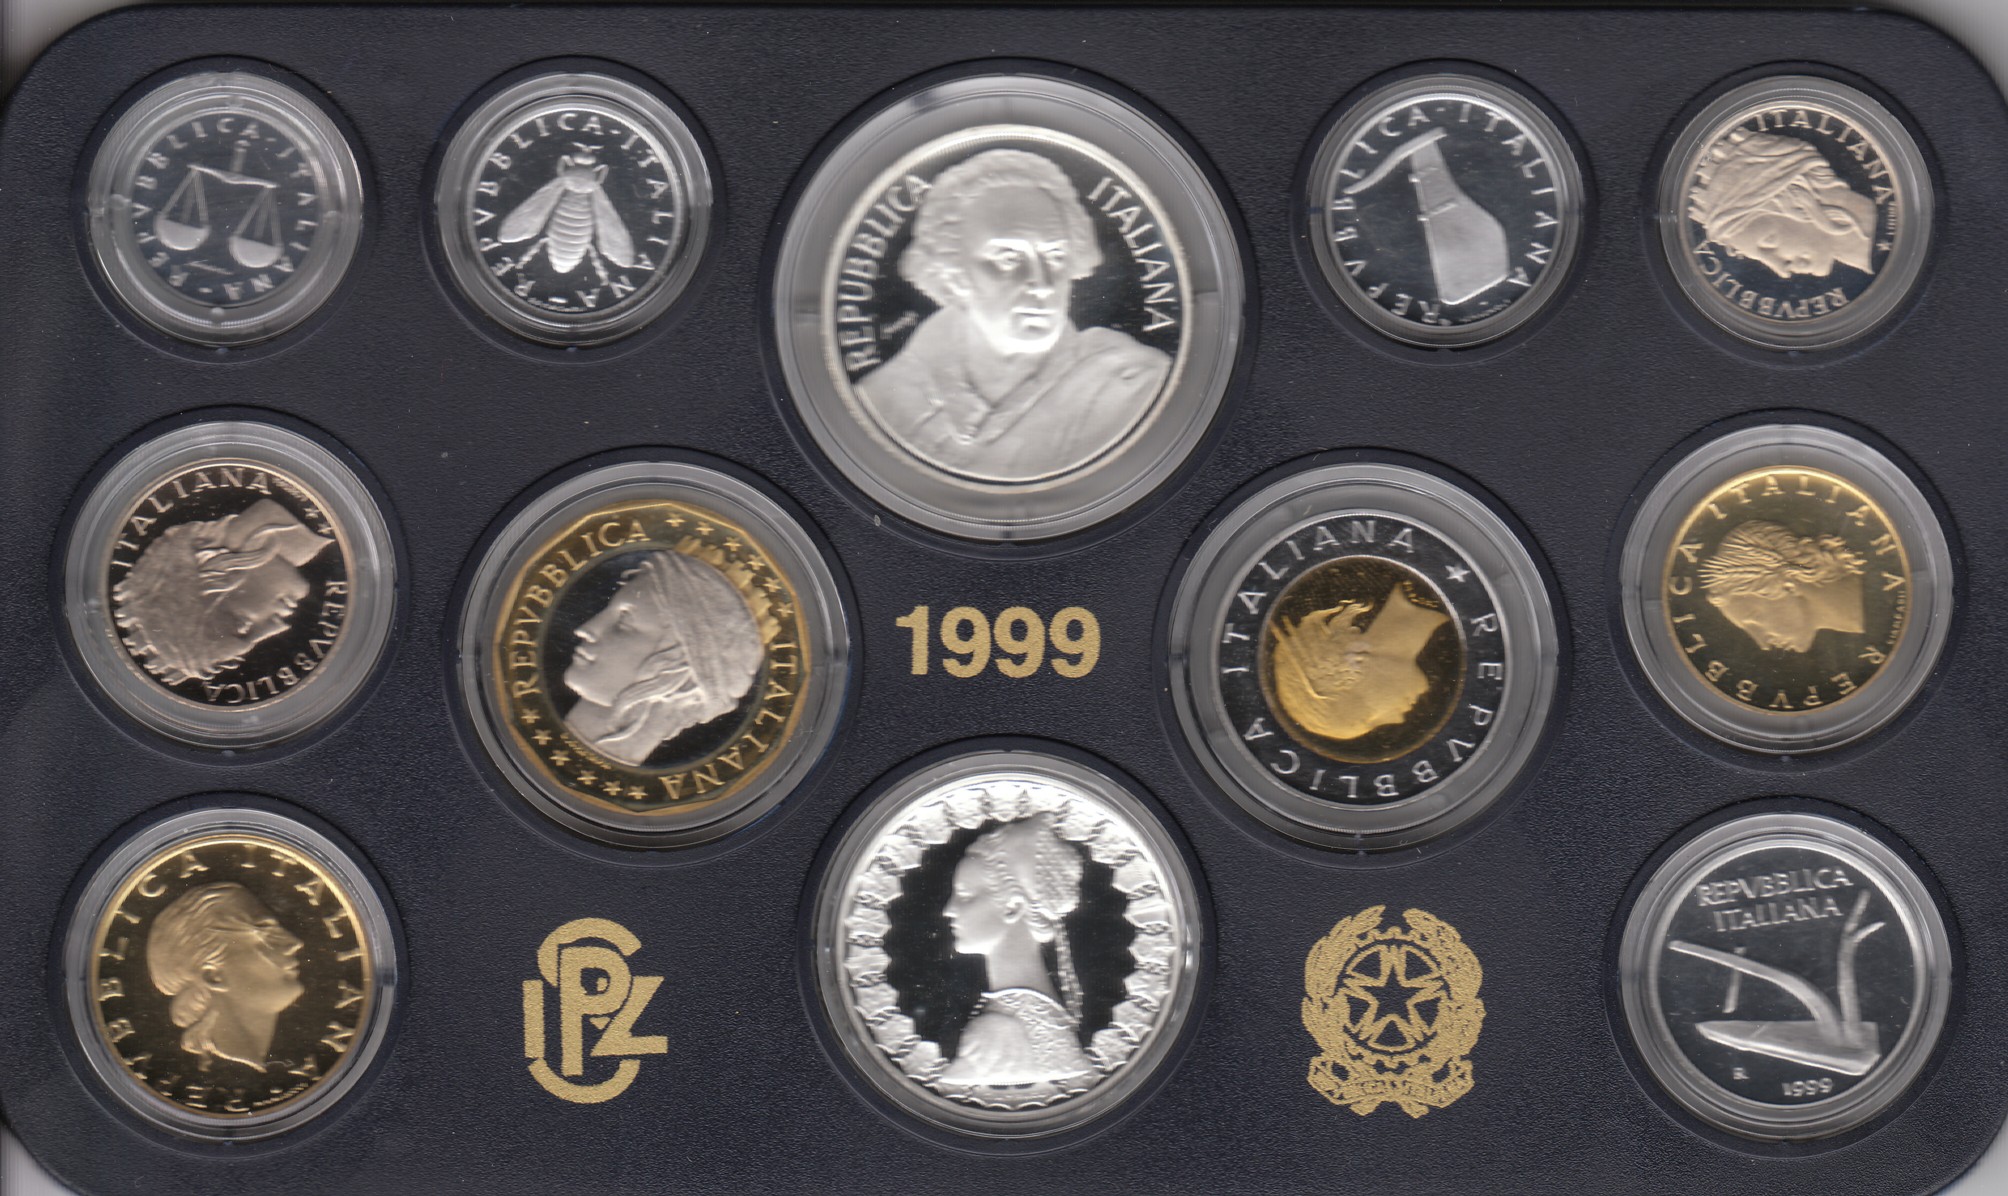 Serie completa di 12 monete confezionate con L.1000 "V. Alfieri"